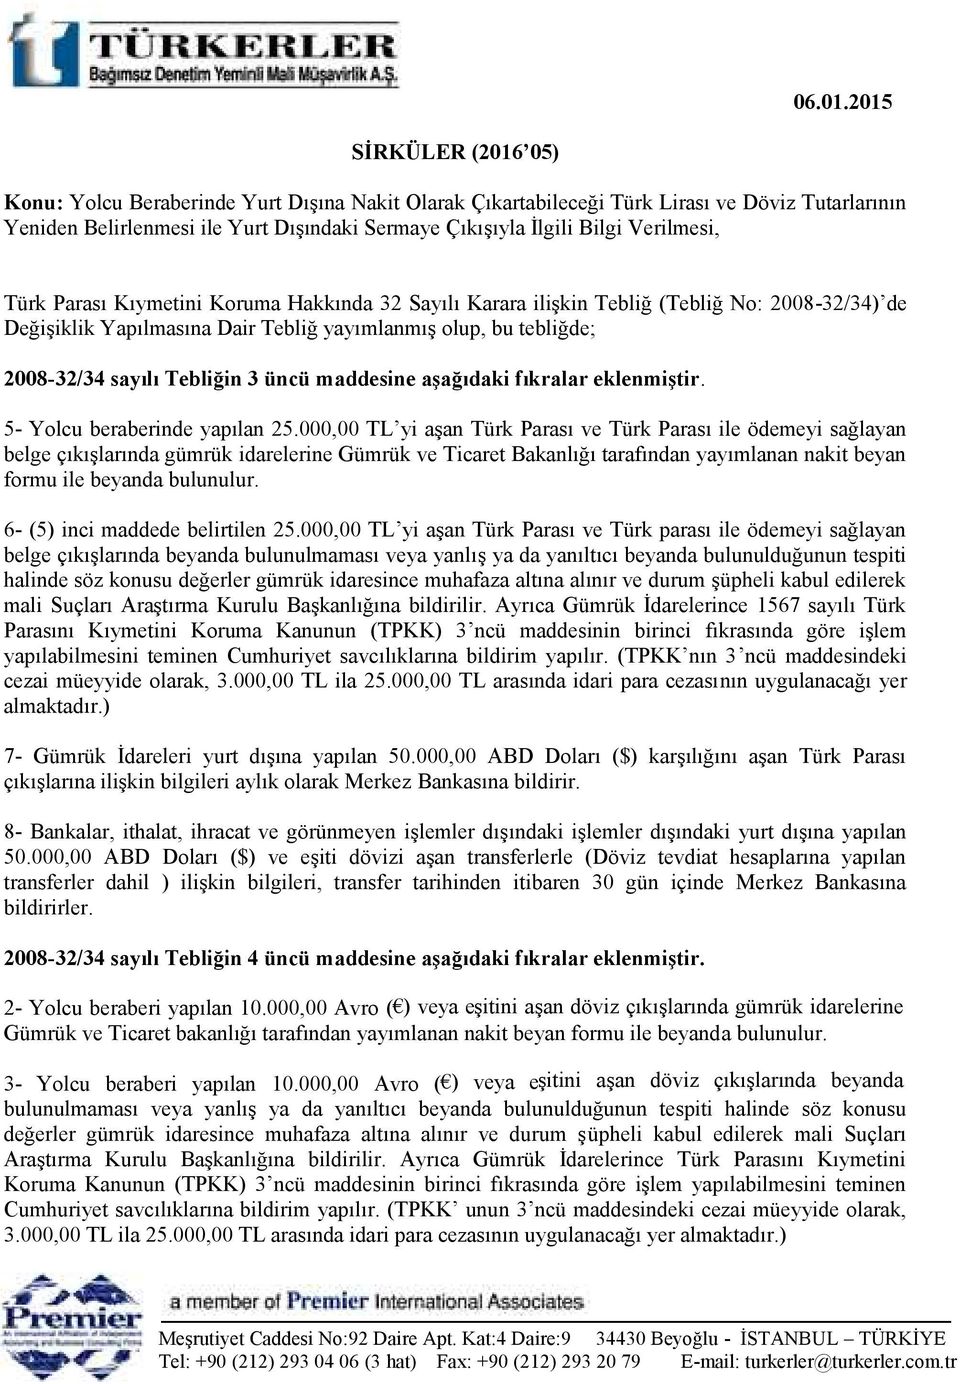 Verilmesi, Türk Parası Kıymetini Koruma Hakkında 32 Sayılı Karara ilişkin Tebliğ (Tebliğ No: 2008-32/34) de Değişiklik Yapılmasına Dair Tebliğ yayımlanmış olup, bu tebliğde; 2008-32/34 sayılı